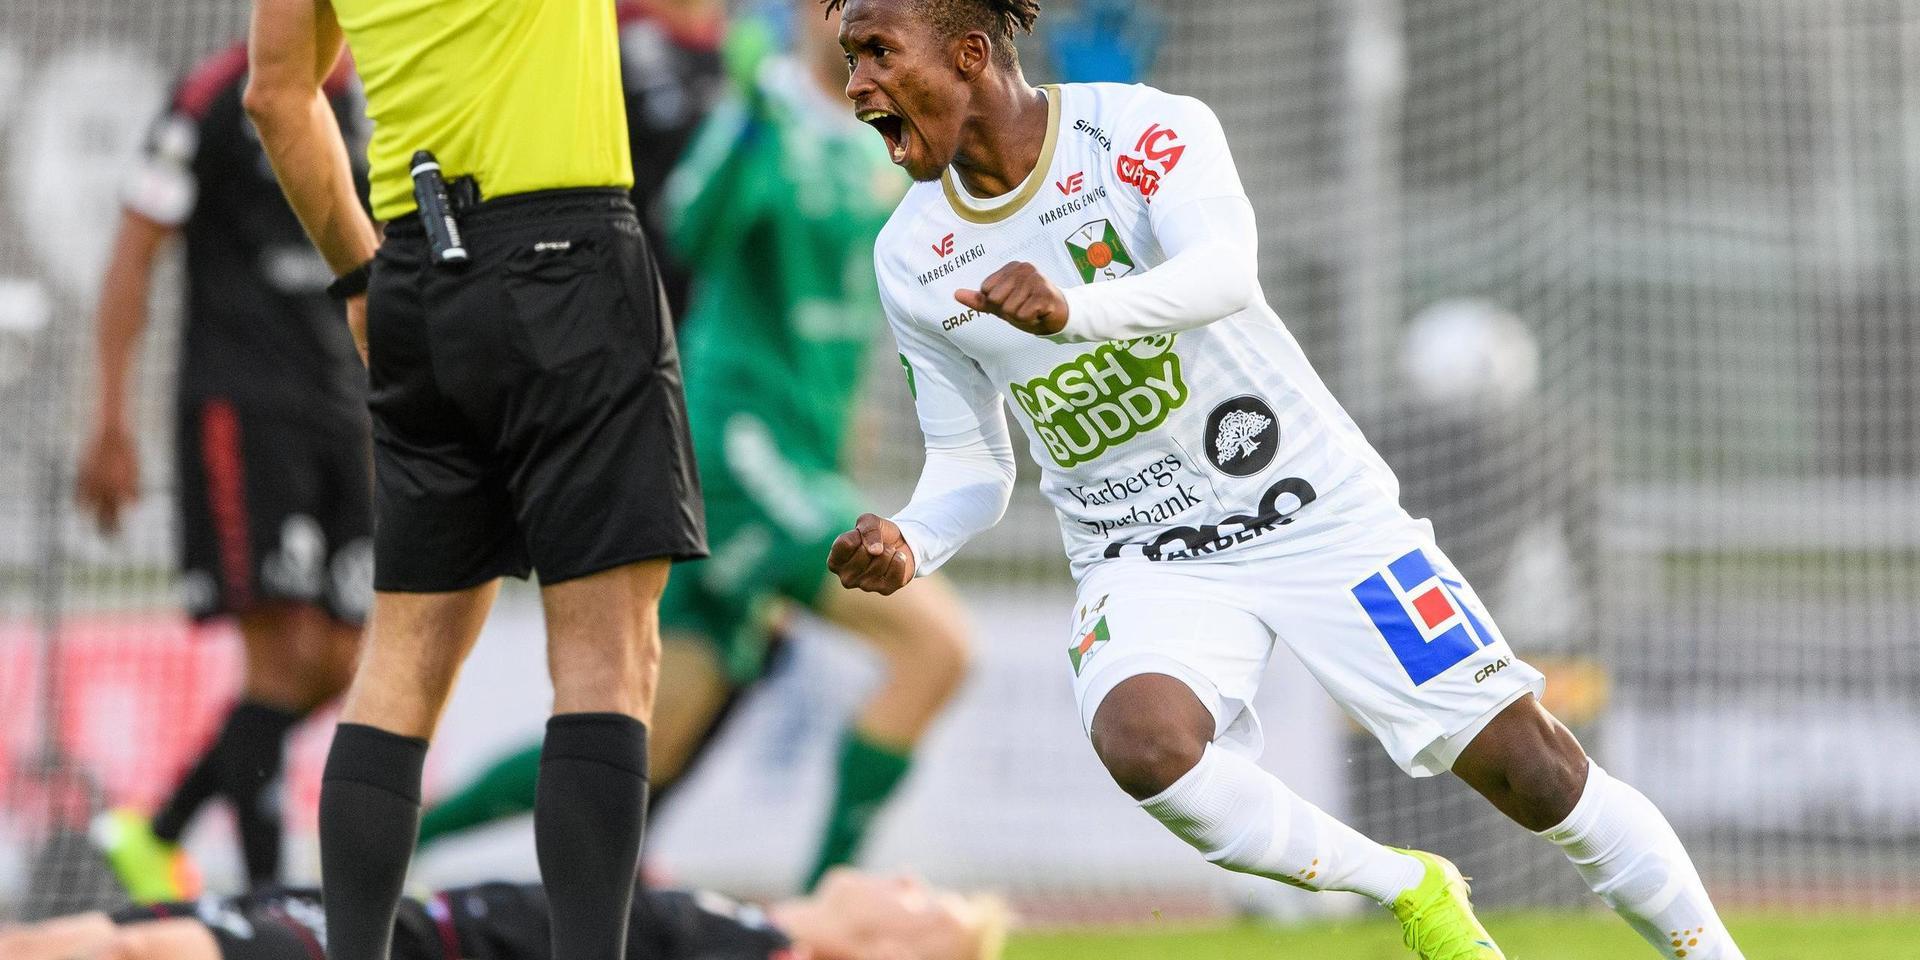 Varbergs Adama Fofana jublar efter 1-0 under fotbollsmatchen i Allsvenskan mellan Varberg och Kalmar den 6 juli 2020 i Varberg.
